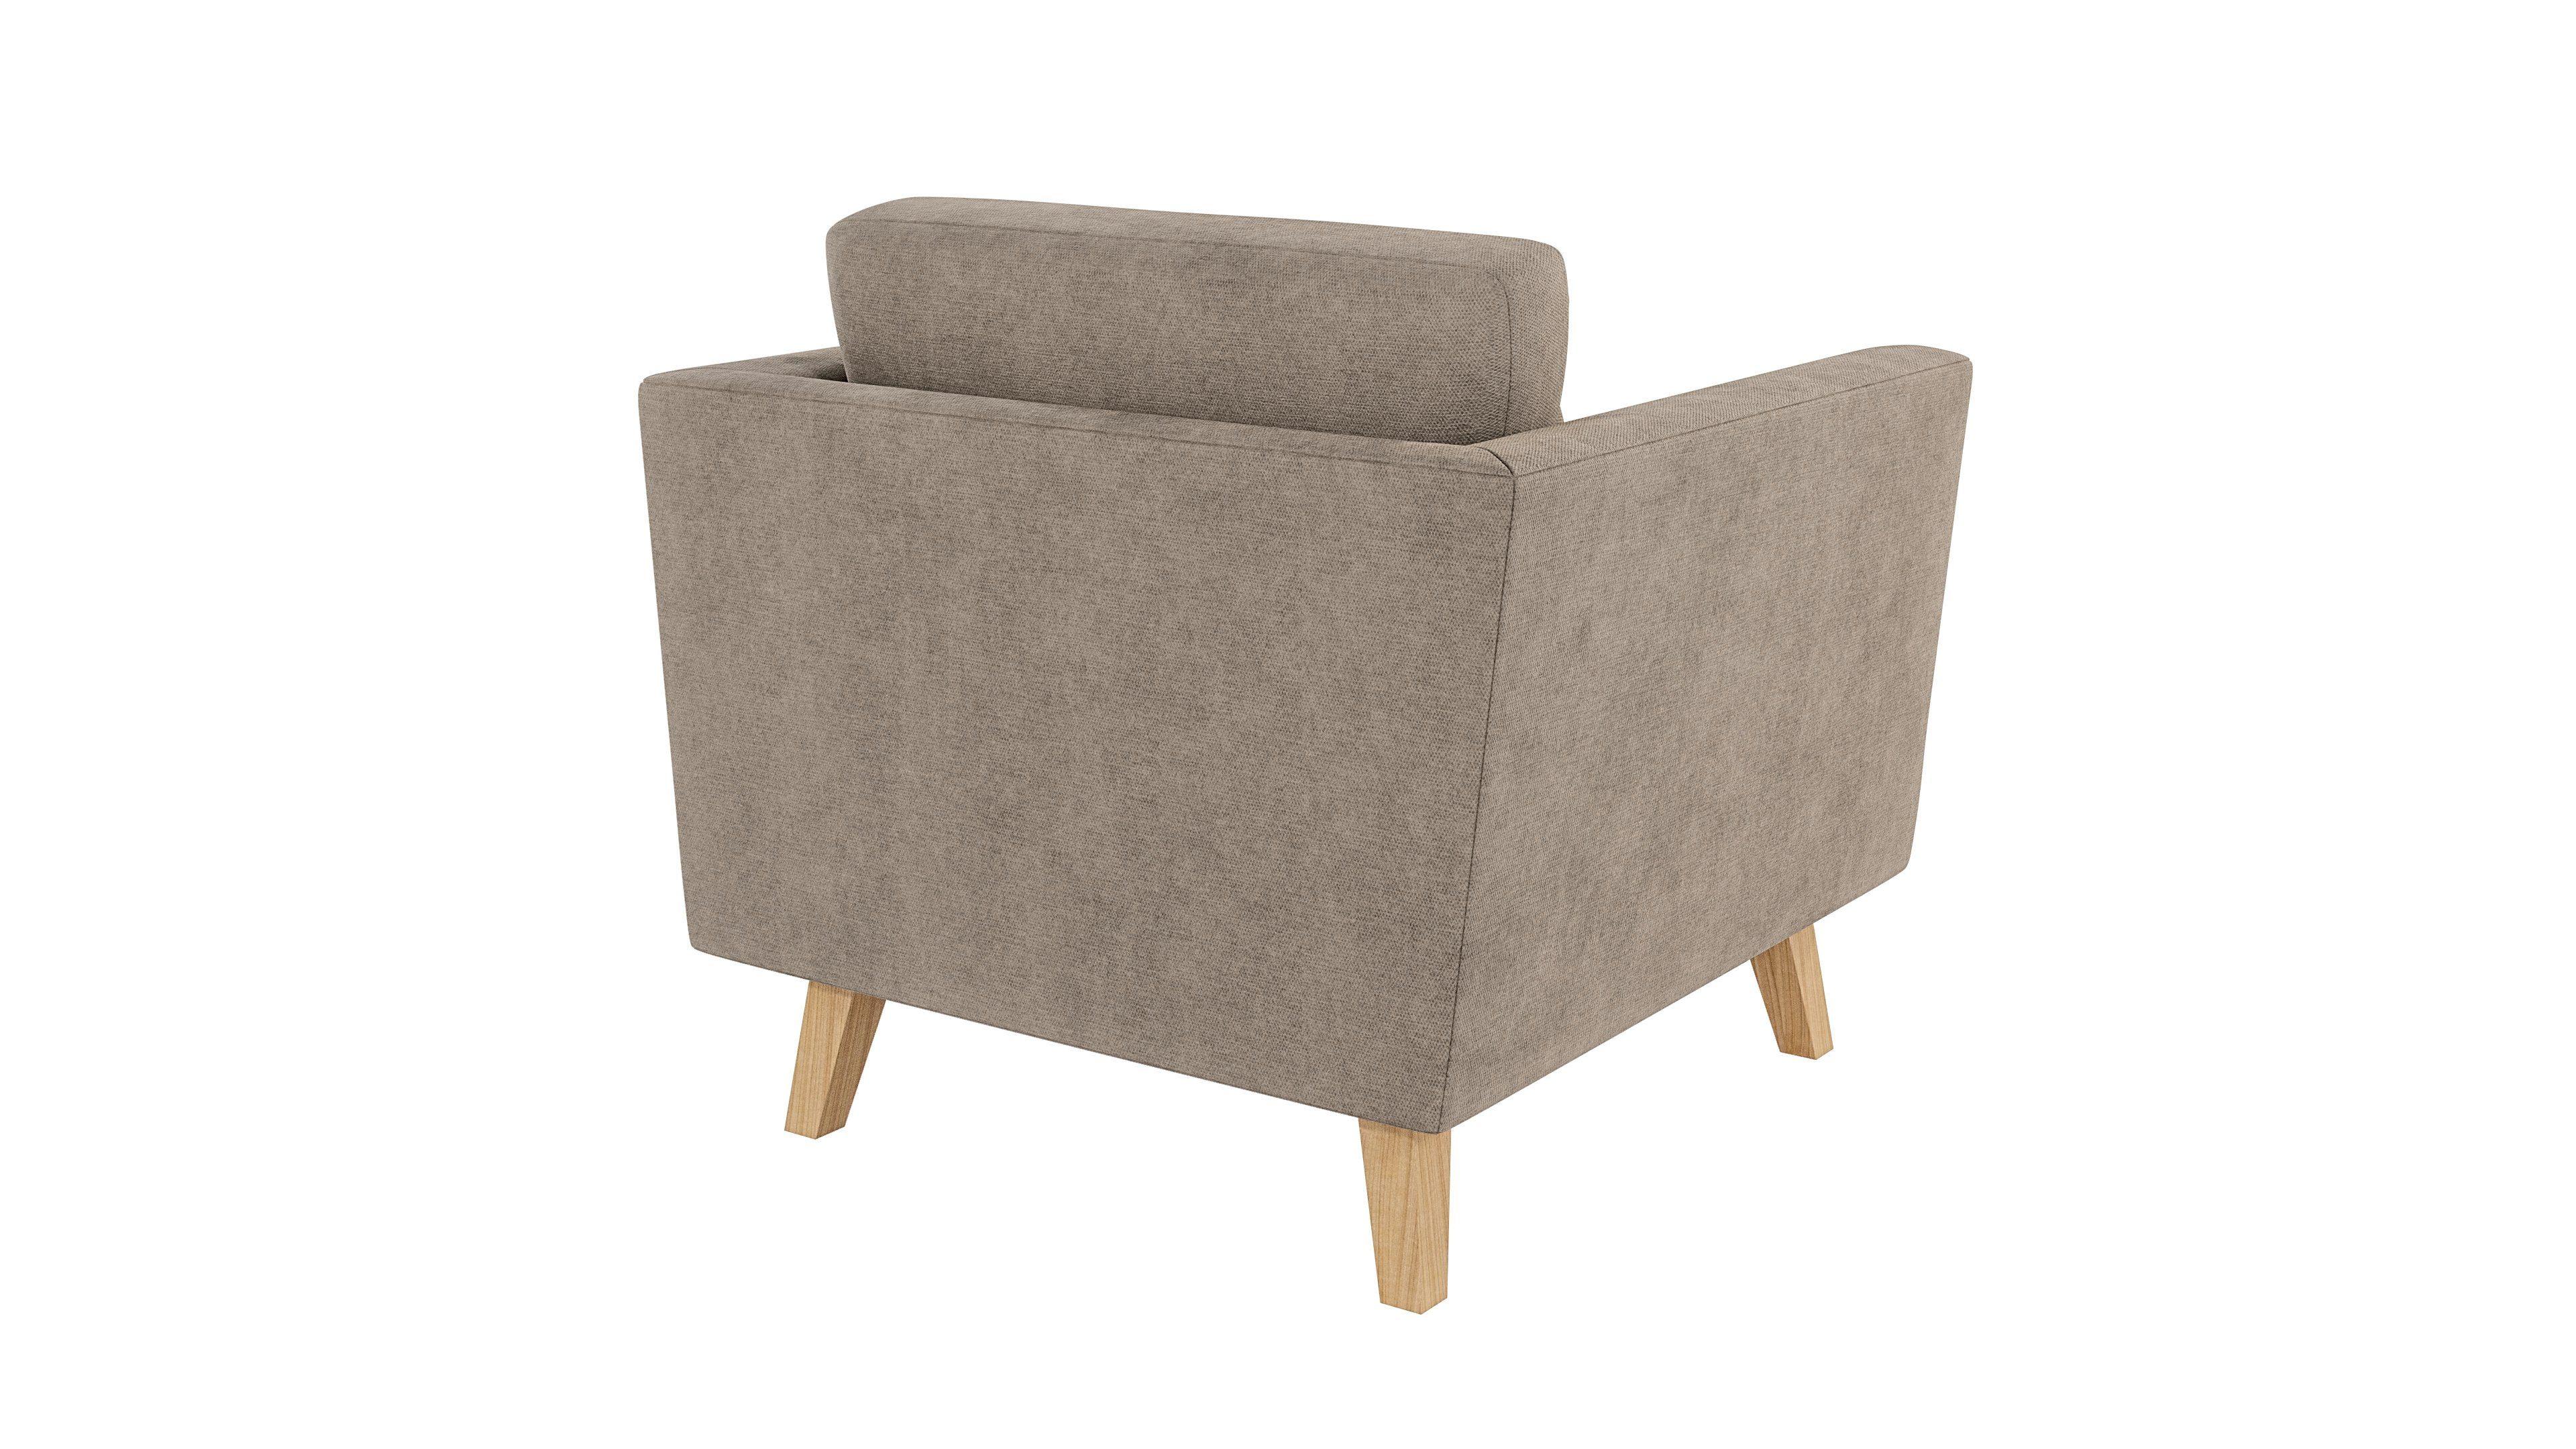 Dunkelbeige Möbel Sessel S-Style mit Wellenfederung Design, im skandinavischen Angeles